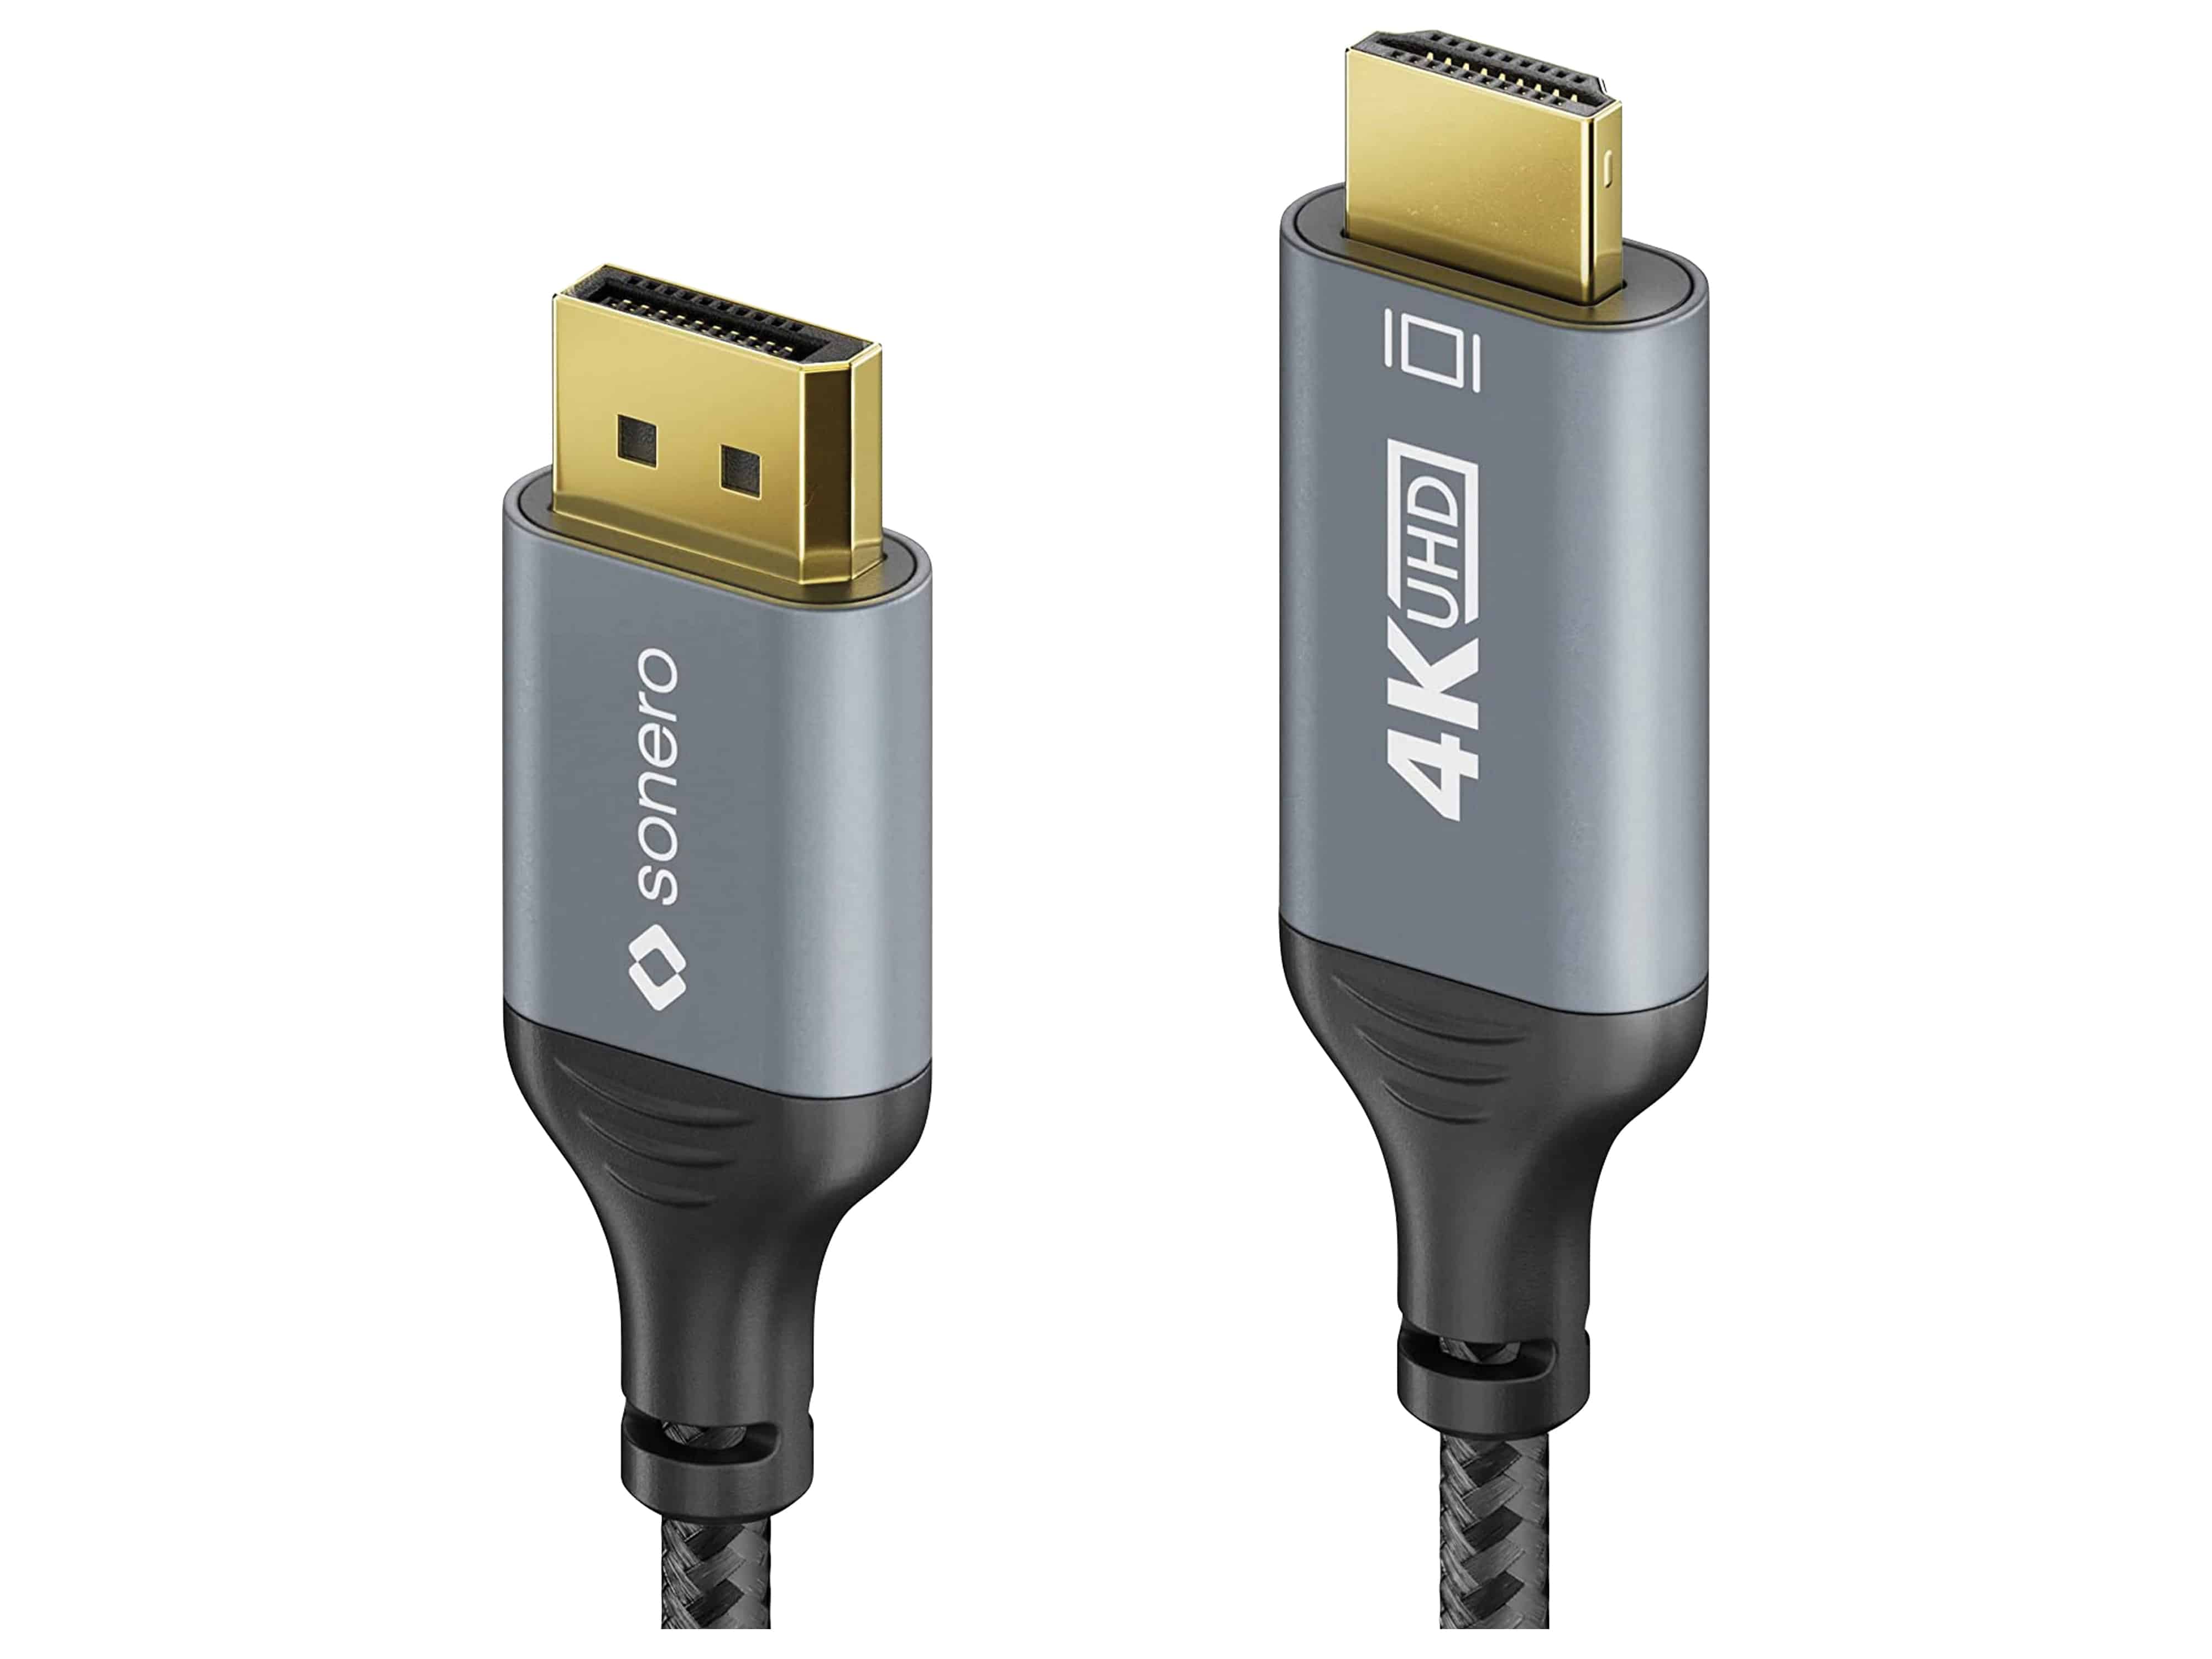 SONERO DisplayPort-Kabel, DP/HDMI, Stecker/Stecker, 4K60, grau/schwarz, 1 m